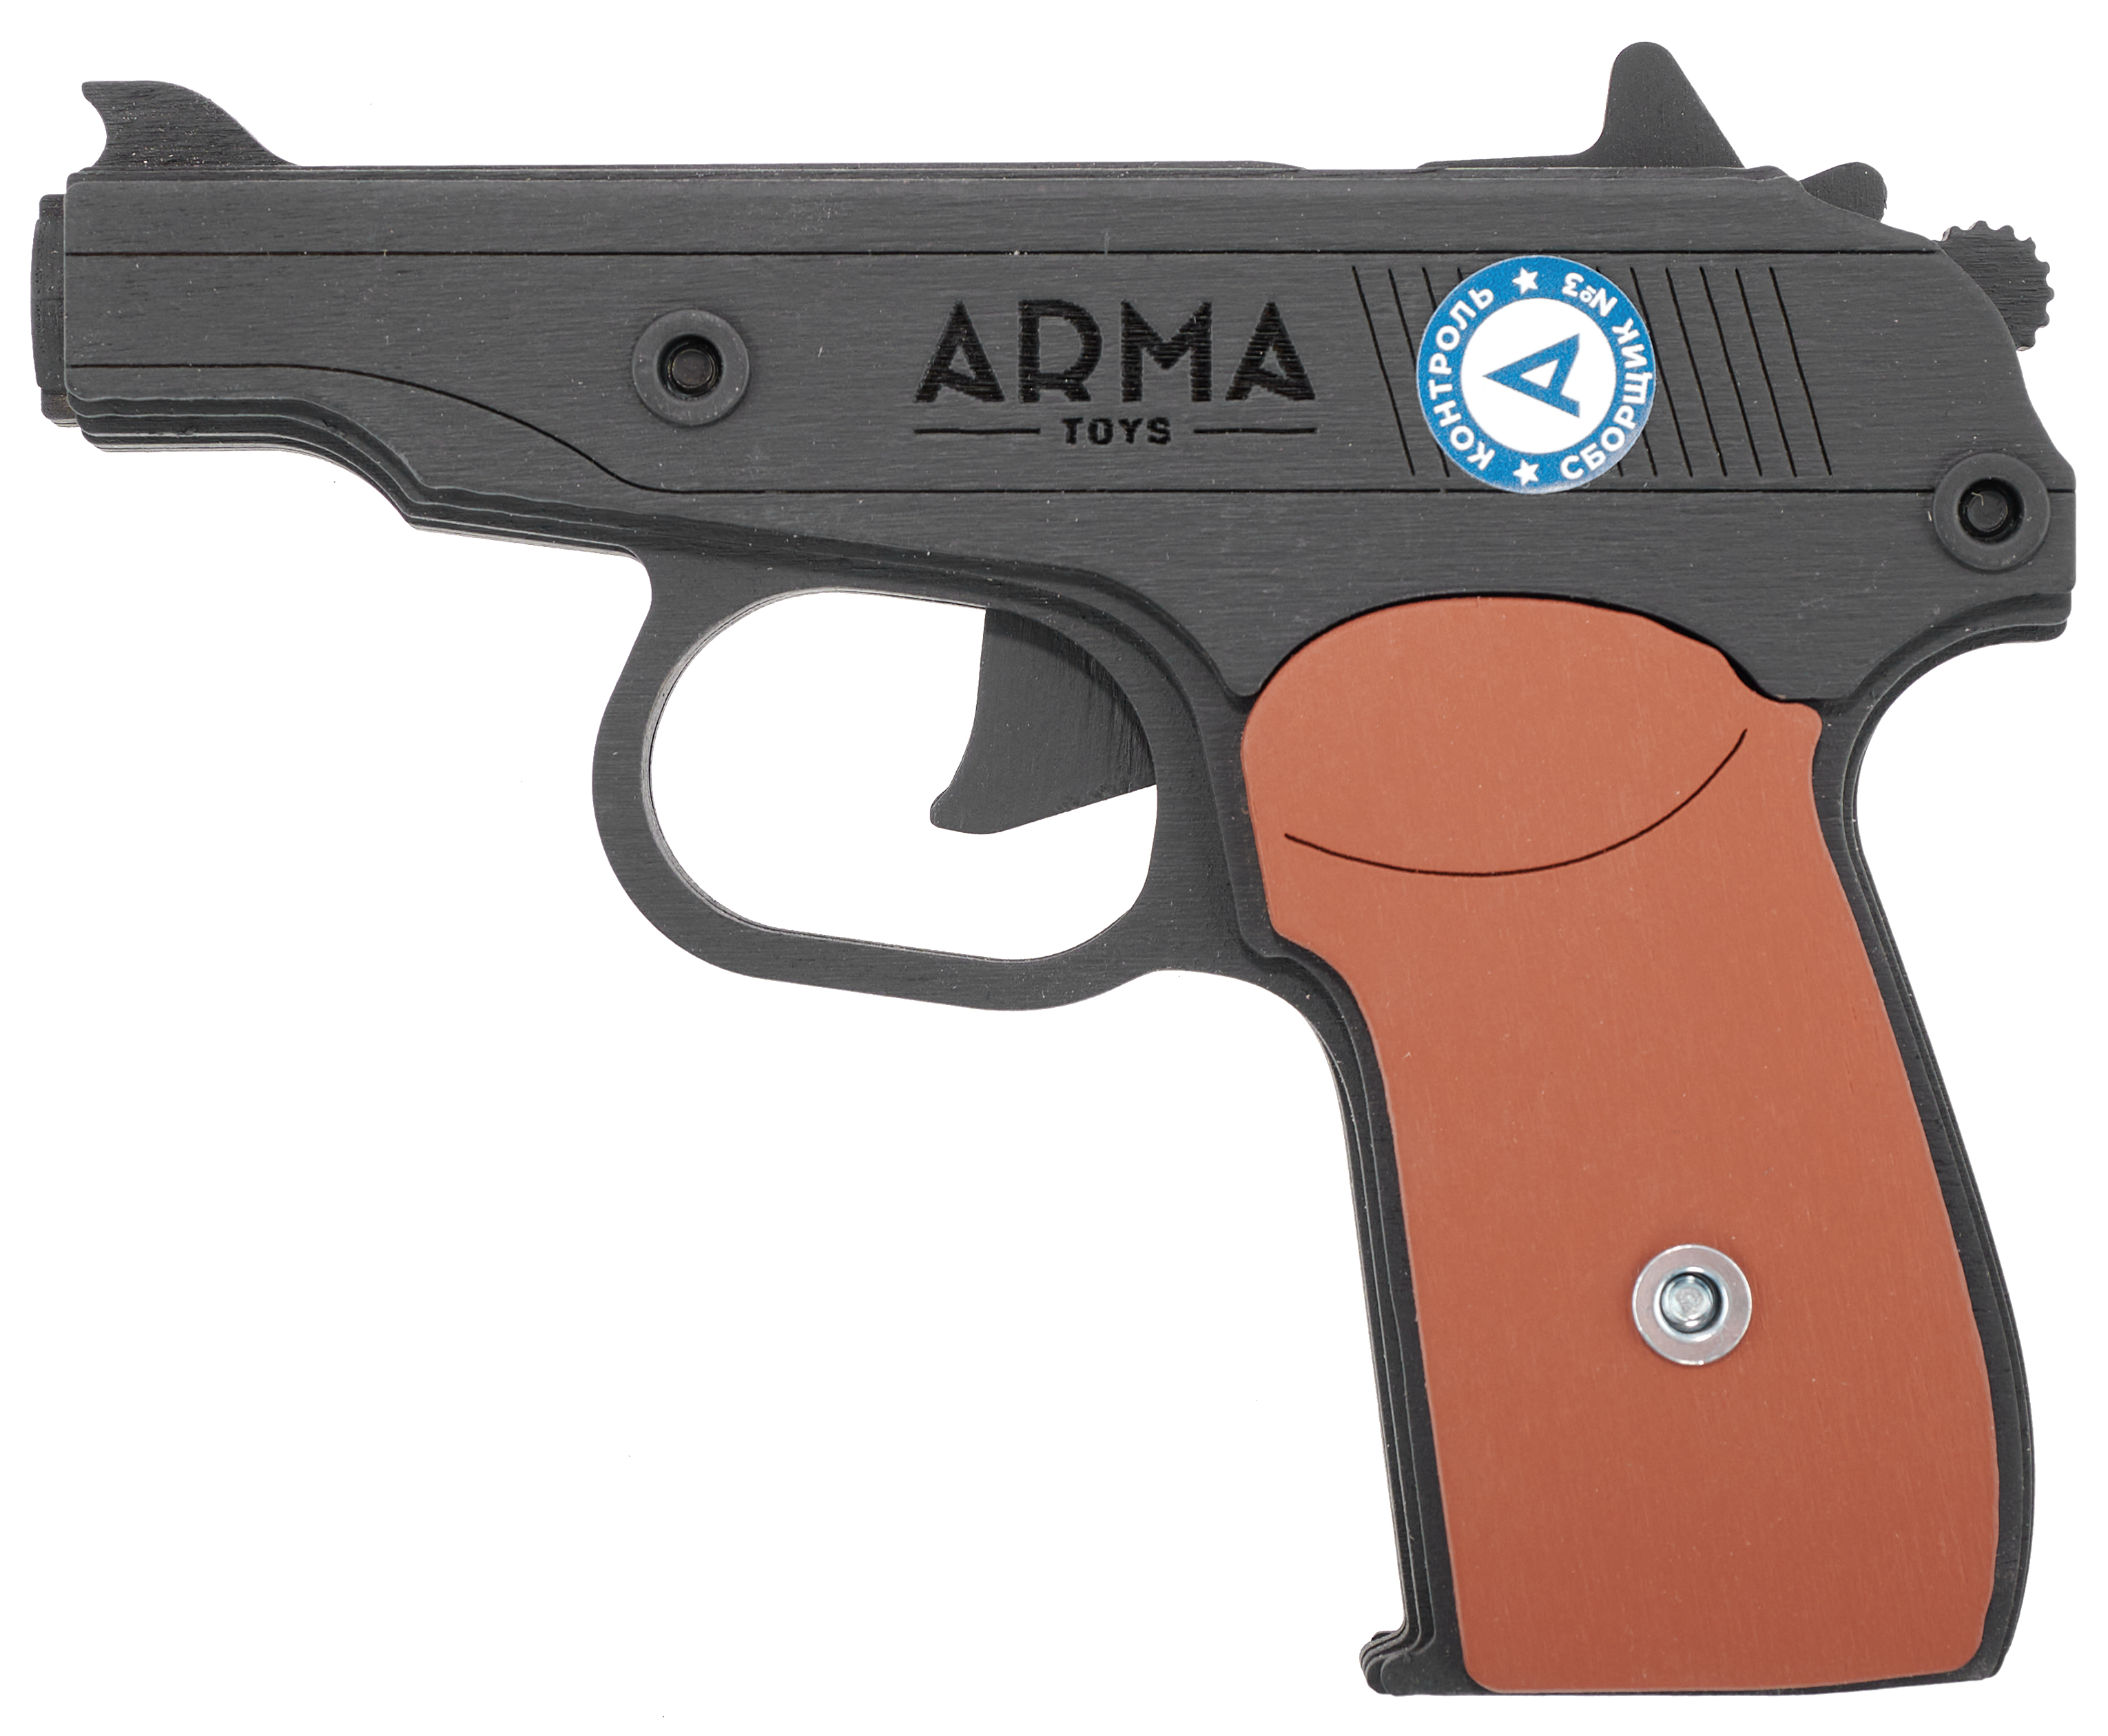 Резинкострел игрушечный Arma toys пистолет Макарова макет, ПМ, окрашенный, AT012K резинкострел arma toys револьвер frings макет ат002